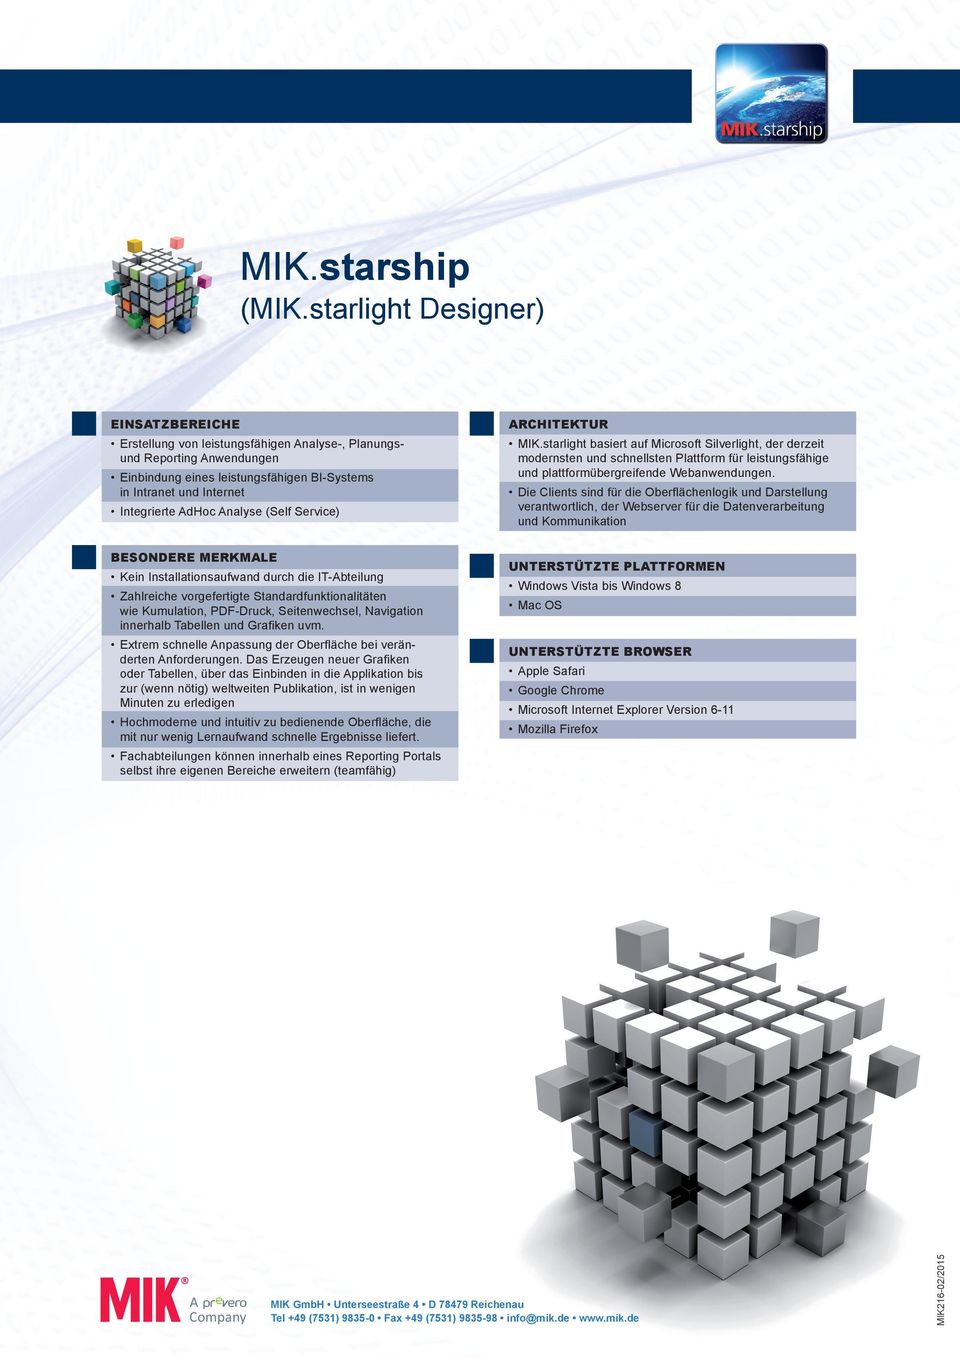 Analyse (Self Service) ARCHITEKTUR MIK.starlight basiert auf Microsoft Silverlight, der derzeit modernsten und schnellsten Plattform für leistungsfähige und plattformübergreifende Webanwendungen.